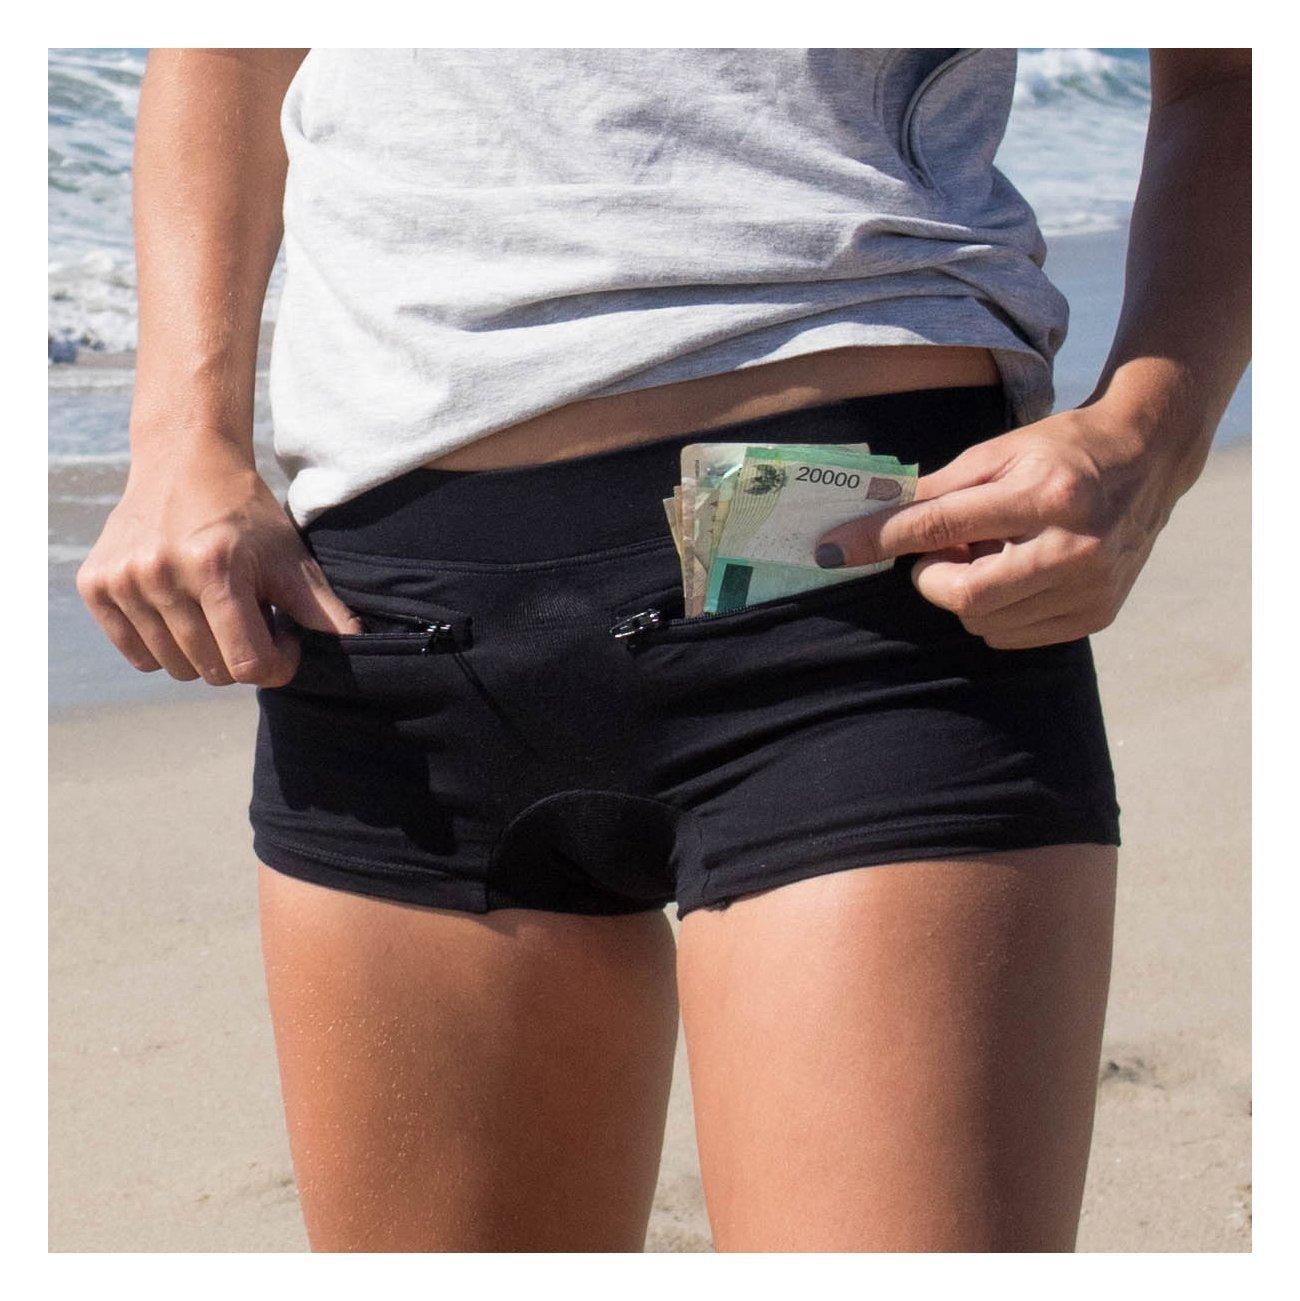 Women's travel safety gear: underwear with secret pockets